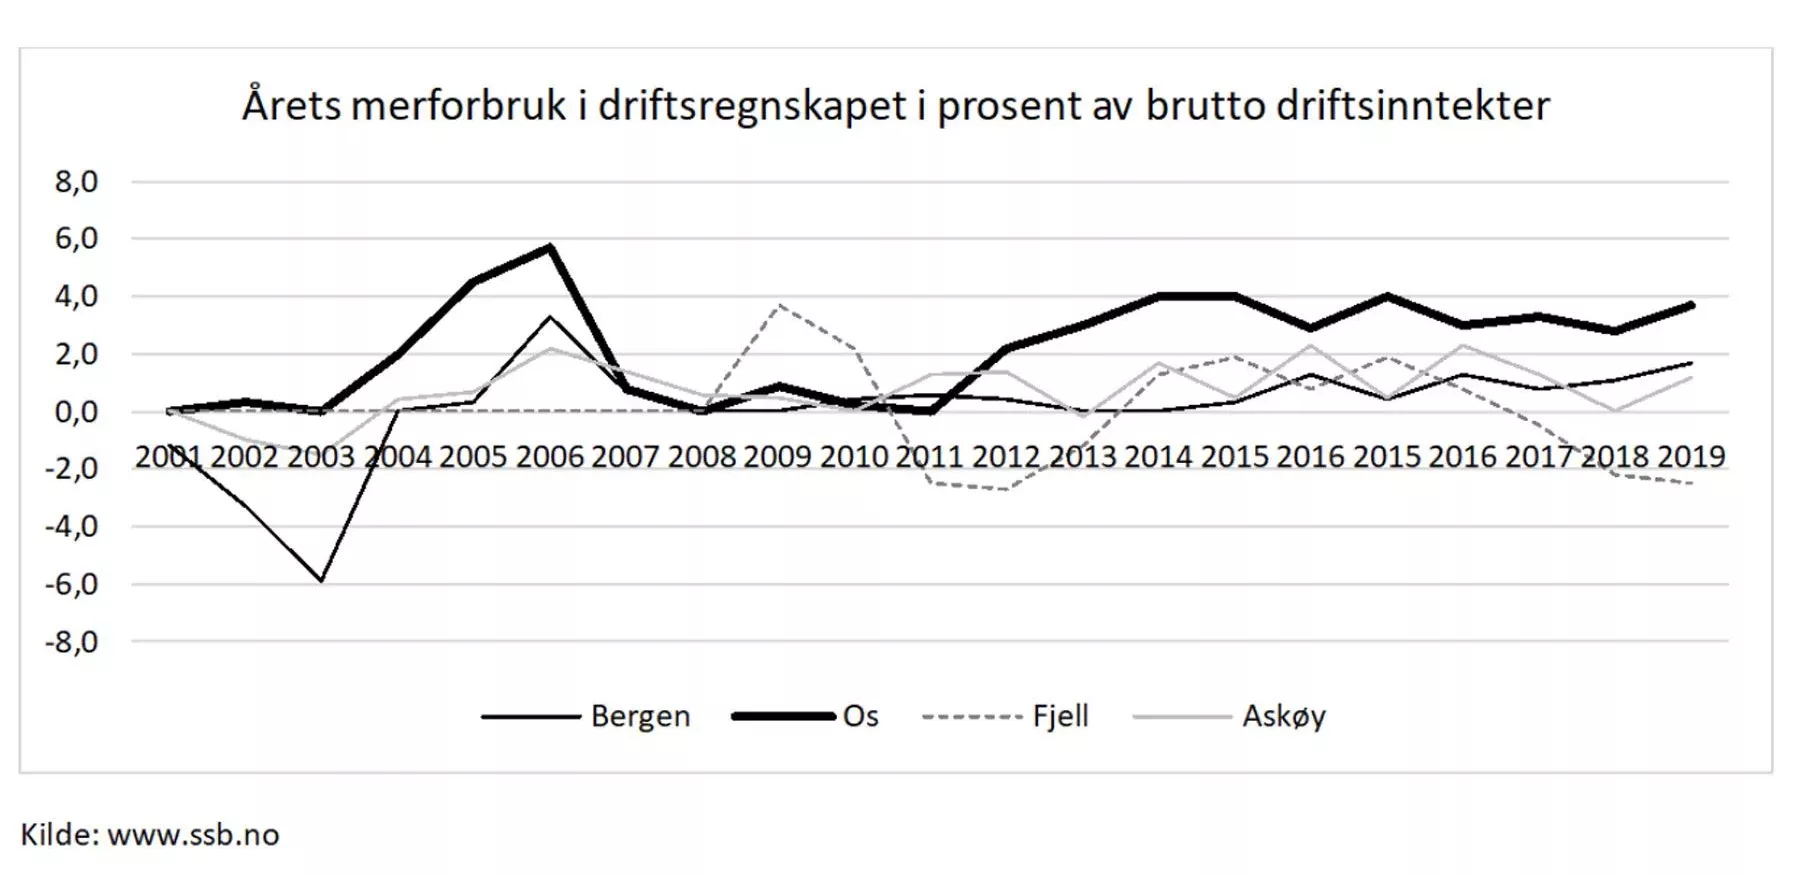 Graf av årets merforbruk i driftsregnskap i prosent av brutto driftsinntekter